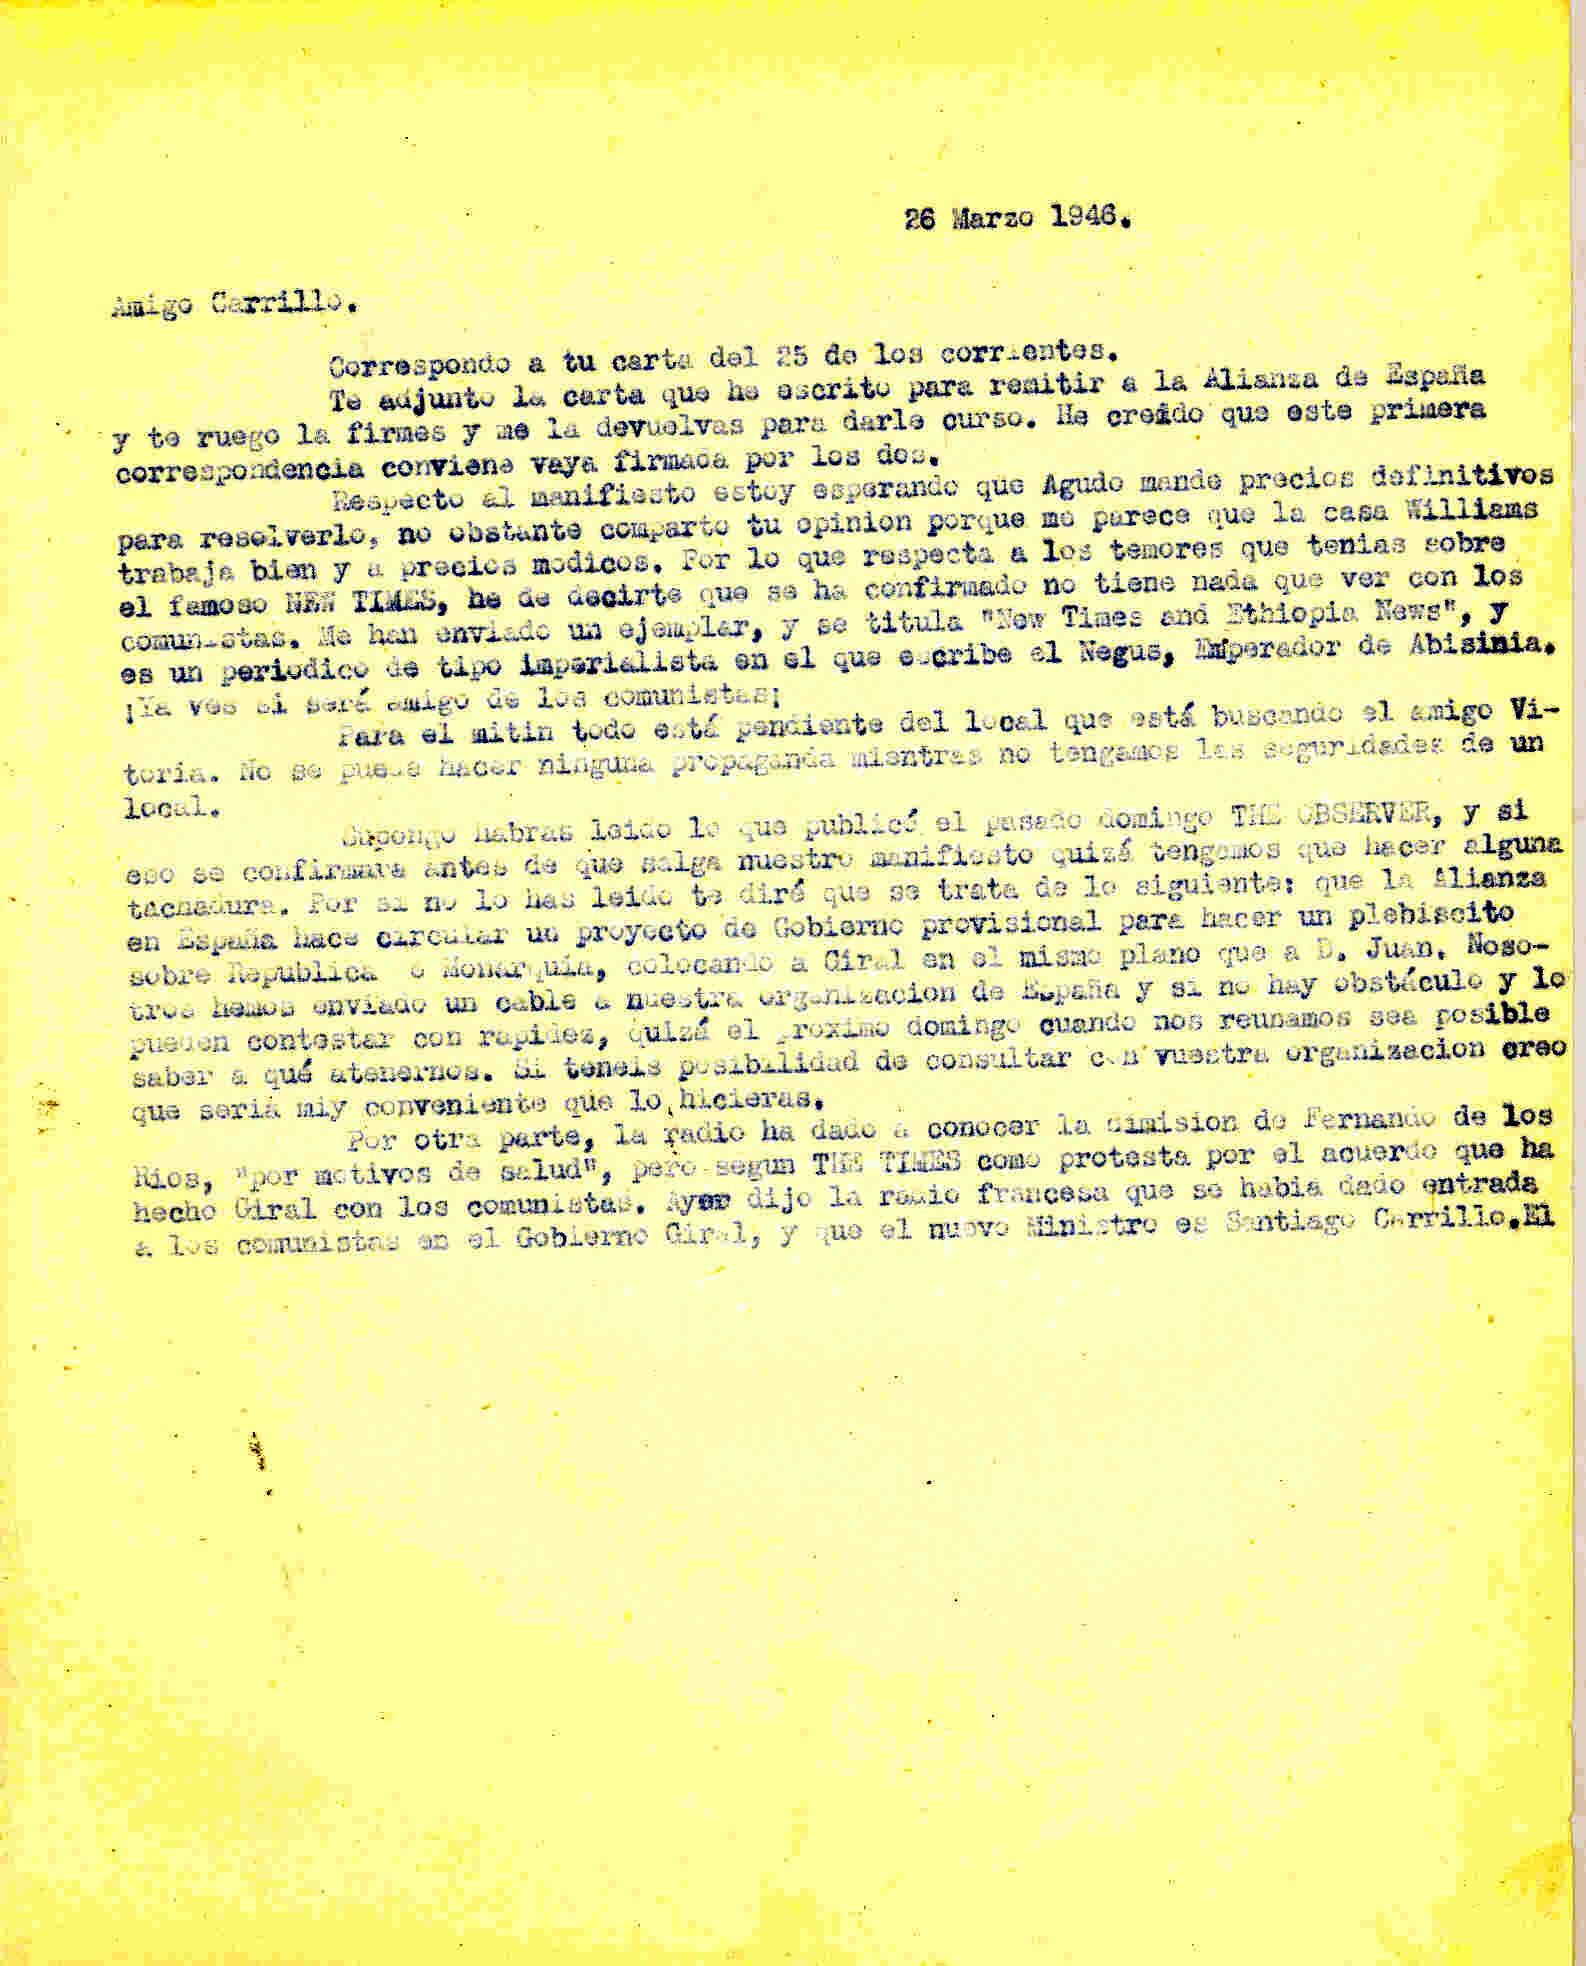 Carta a Wenceslao Carrillo en la que comenta informaciones aparecidas en medios de comunicación acreca de un plebiscito sobre Monarquía y República promovido por la Alianza en España y de la entrada de los comunistas en el gobierno Giral